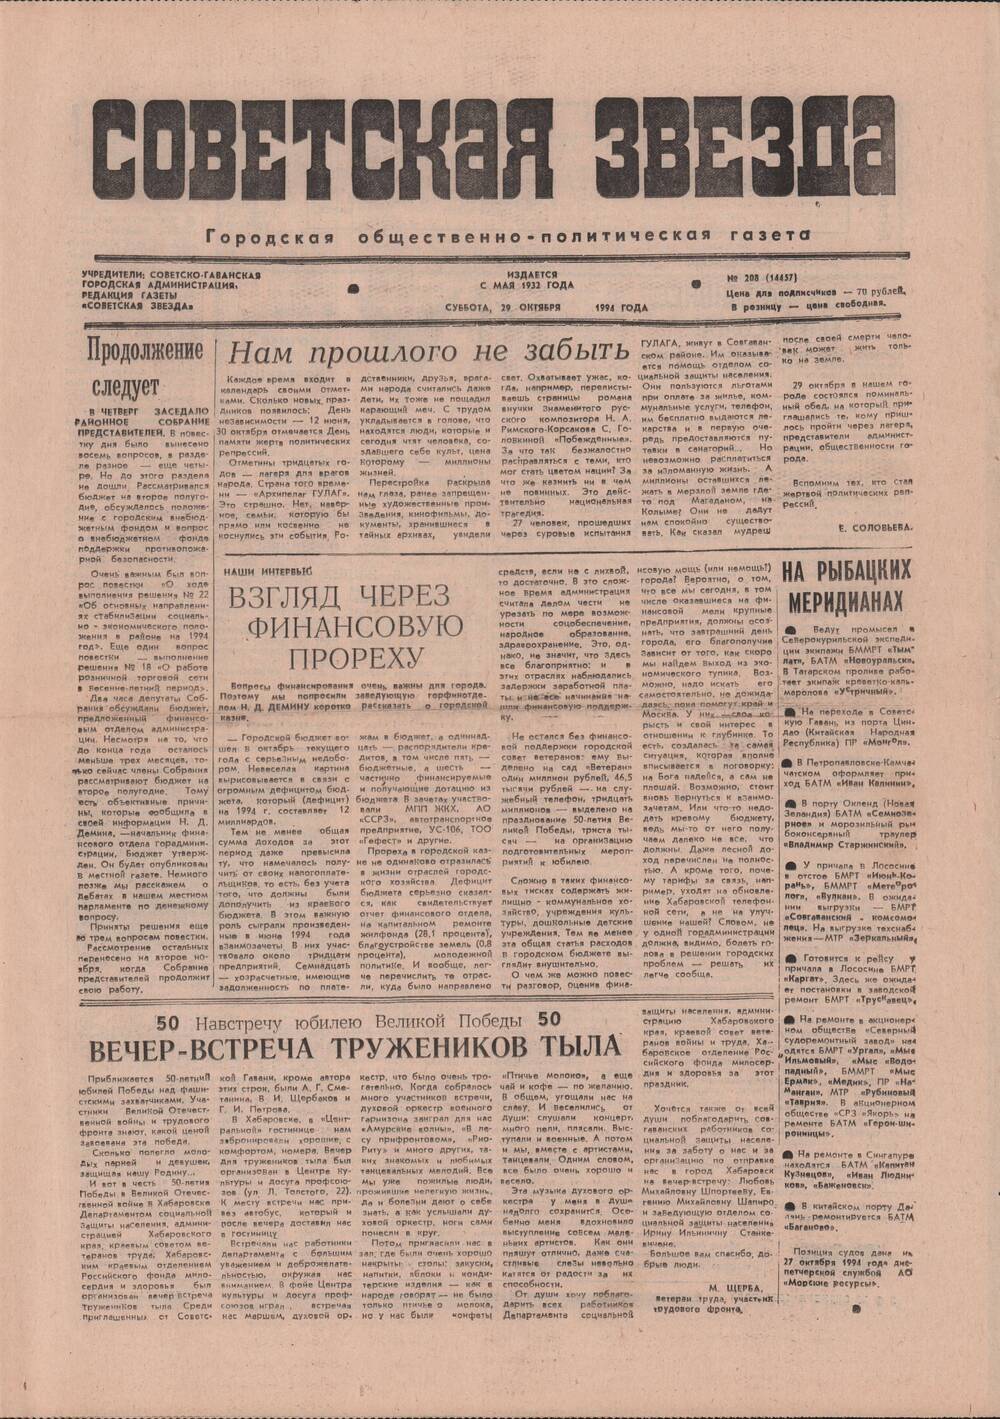 Газета «Советская звезда» № 208 (14457) от 29.10.1994 под рубрикой «50 лет Великой Победы».